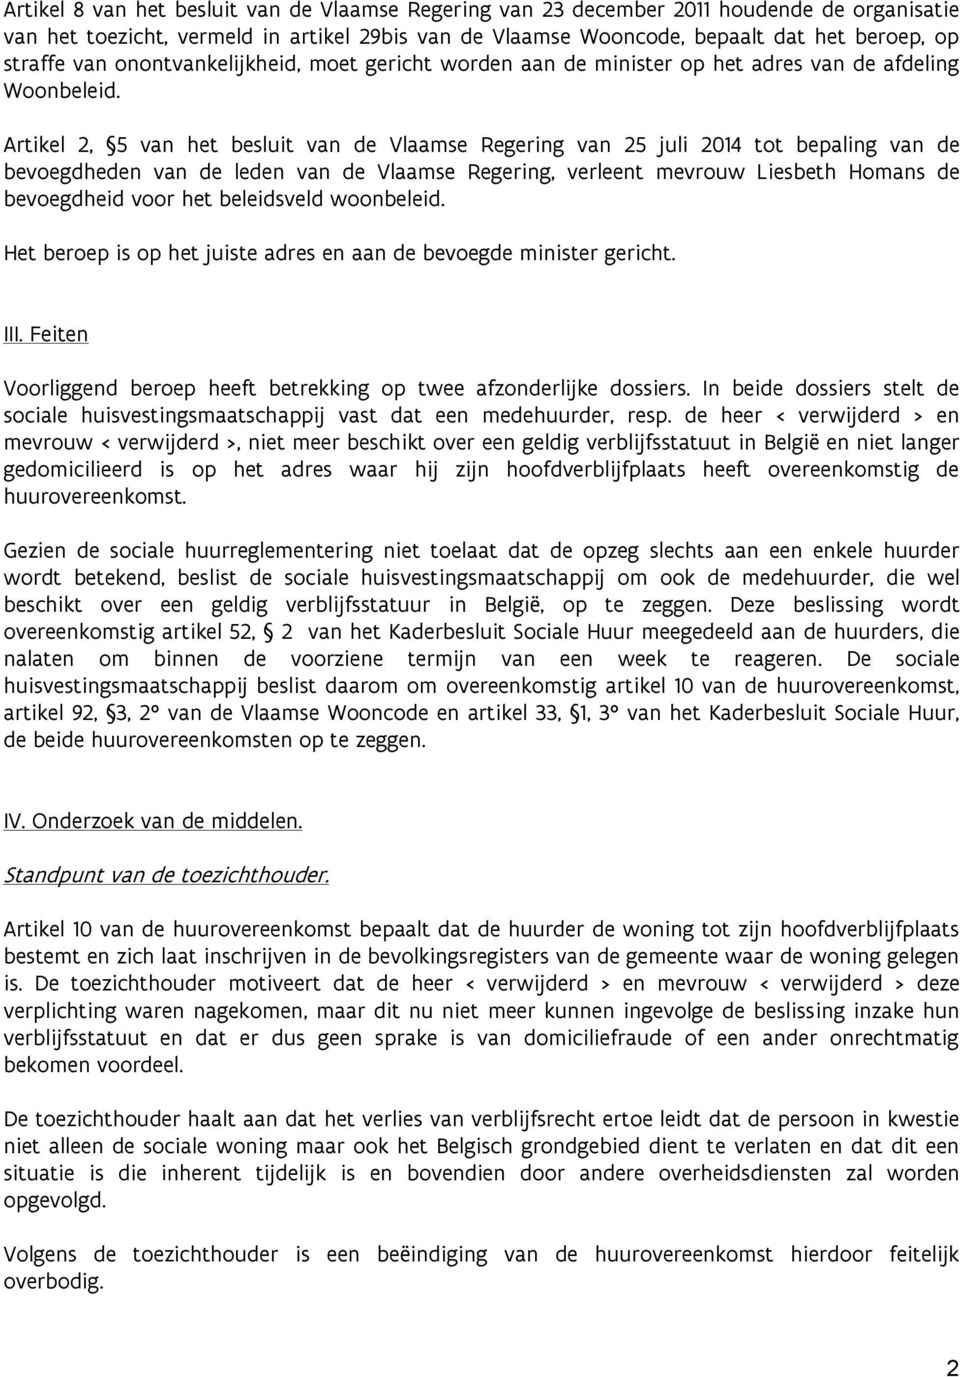 Artikel 2, 5 van het besluit van de Vlaamse Regering van 25 juli 2014 tot bepaling van de bevoegdheden van de leden van de Vlaamse Regering, verleent mevrouw Liesbeth Homans de bevoegdheid voor het